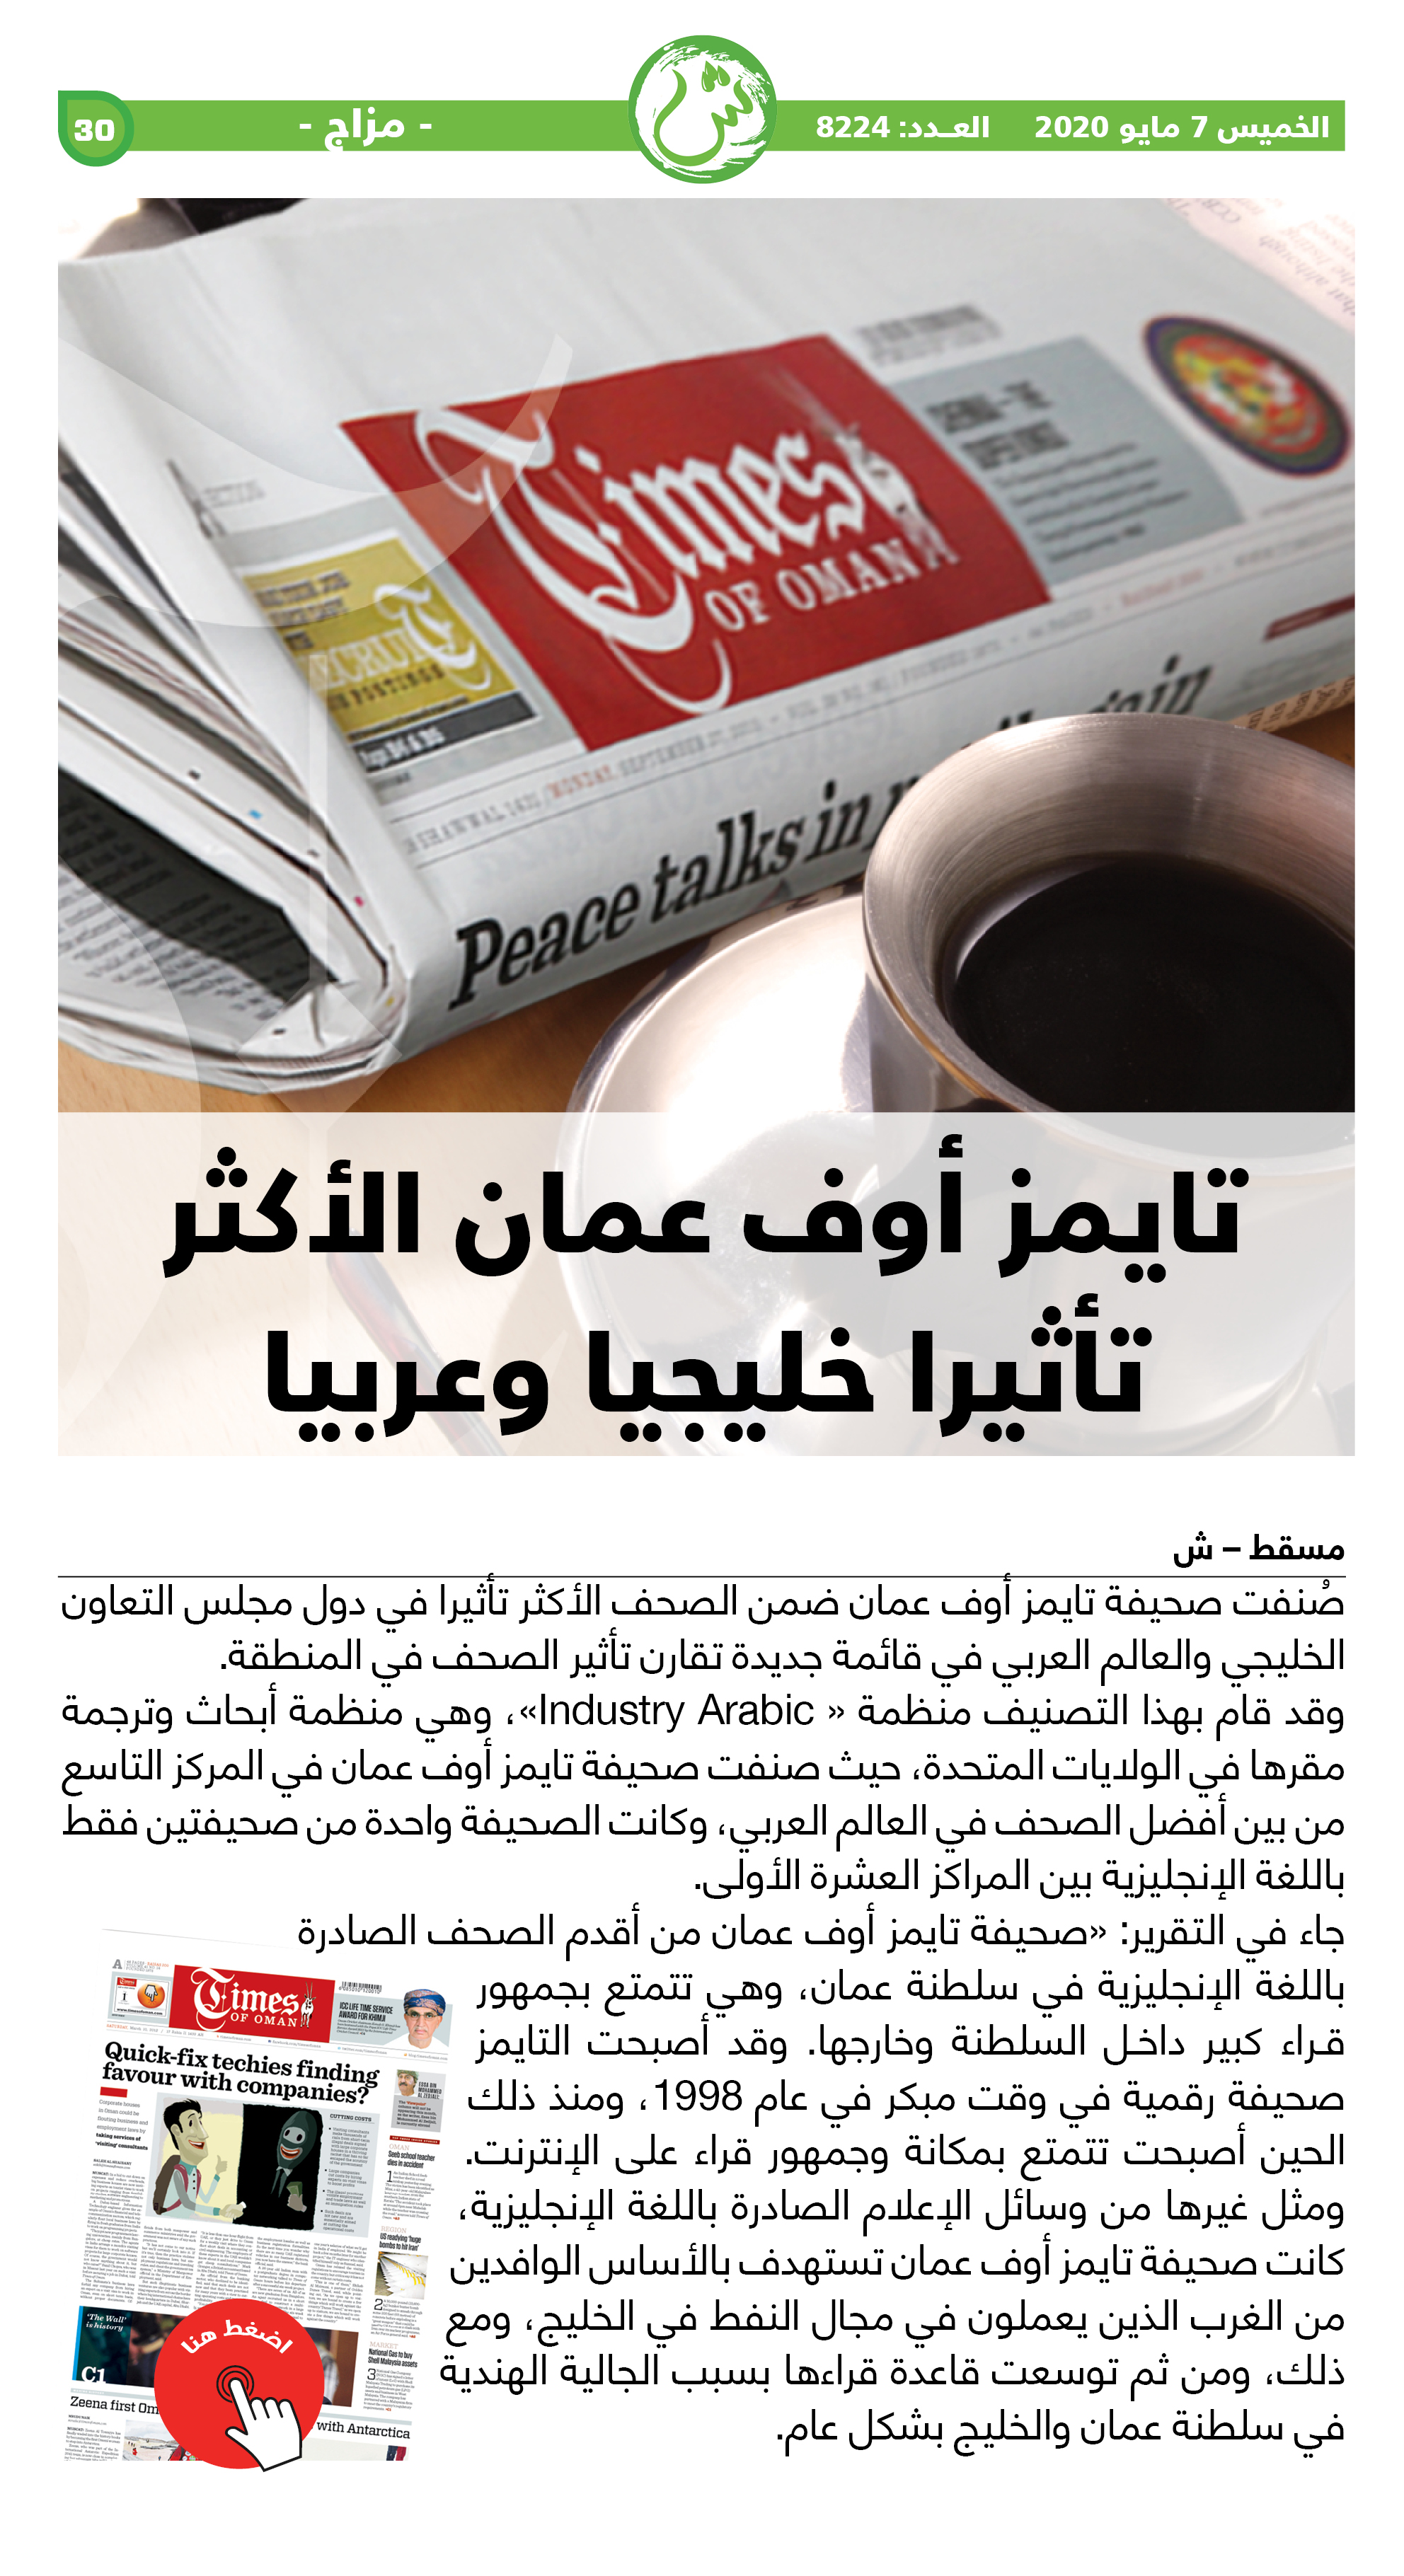 تايمز أوف عمان الأكثر تأثيرا خليجيا وعربيا